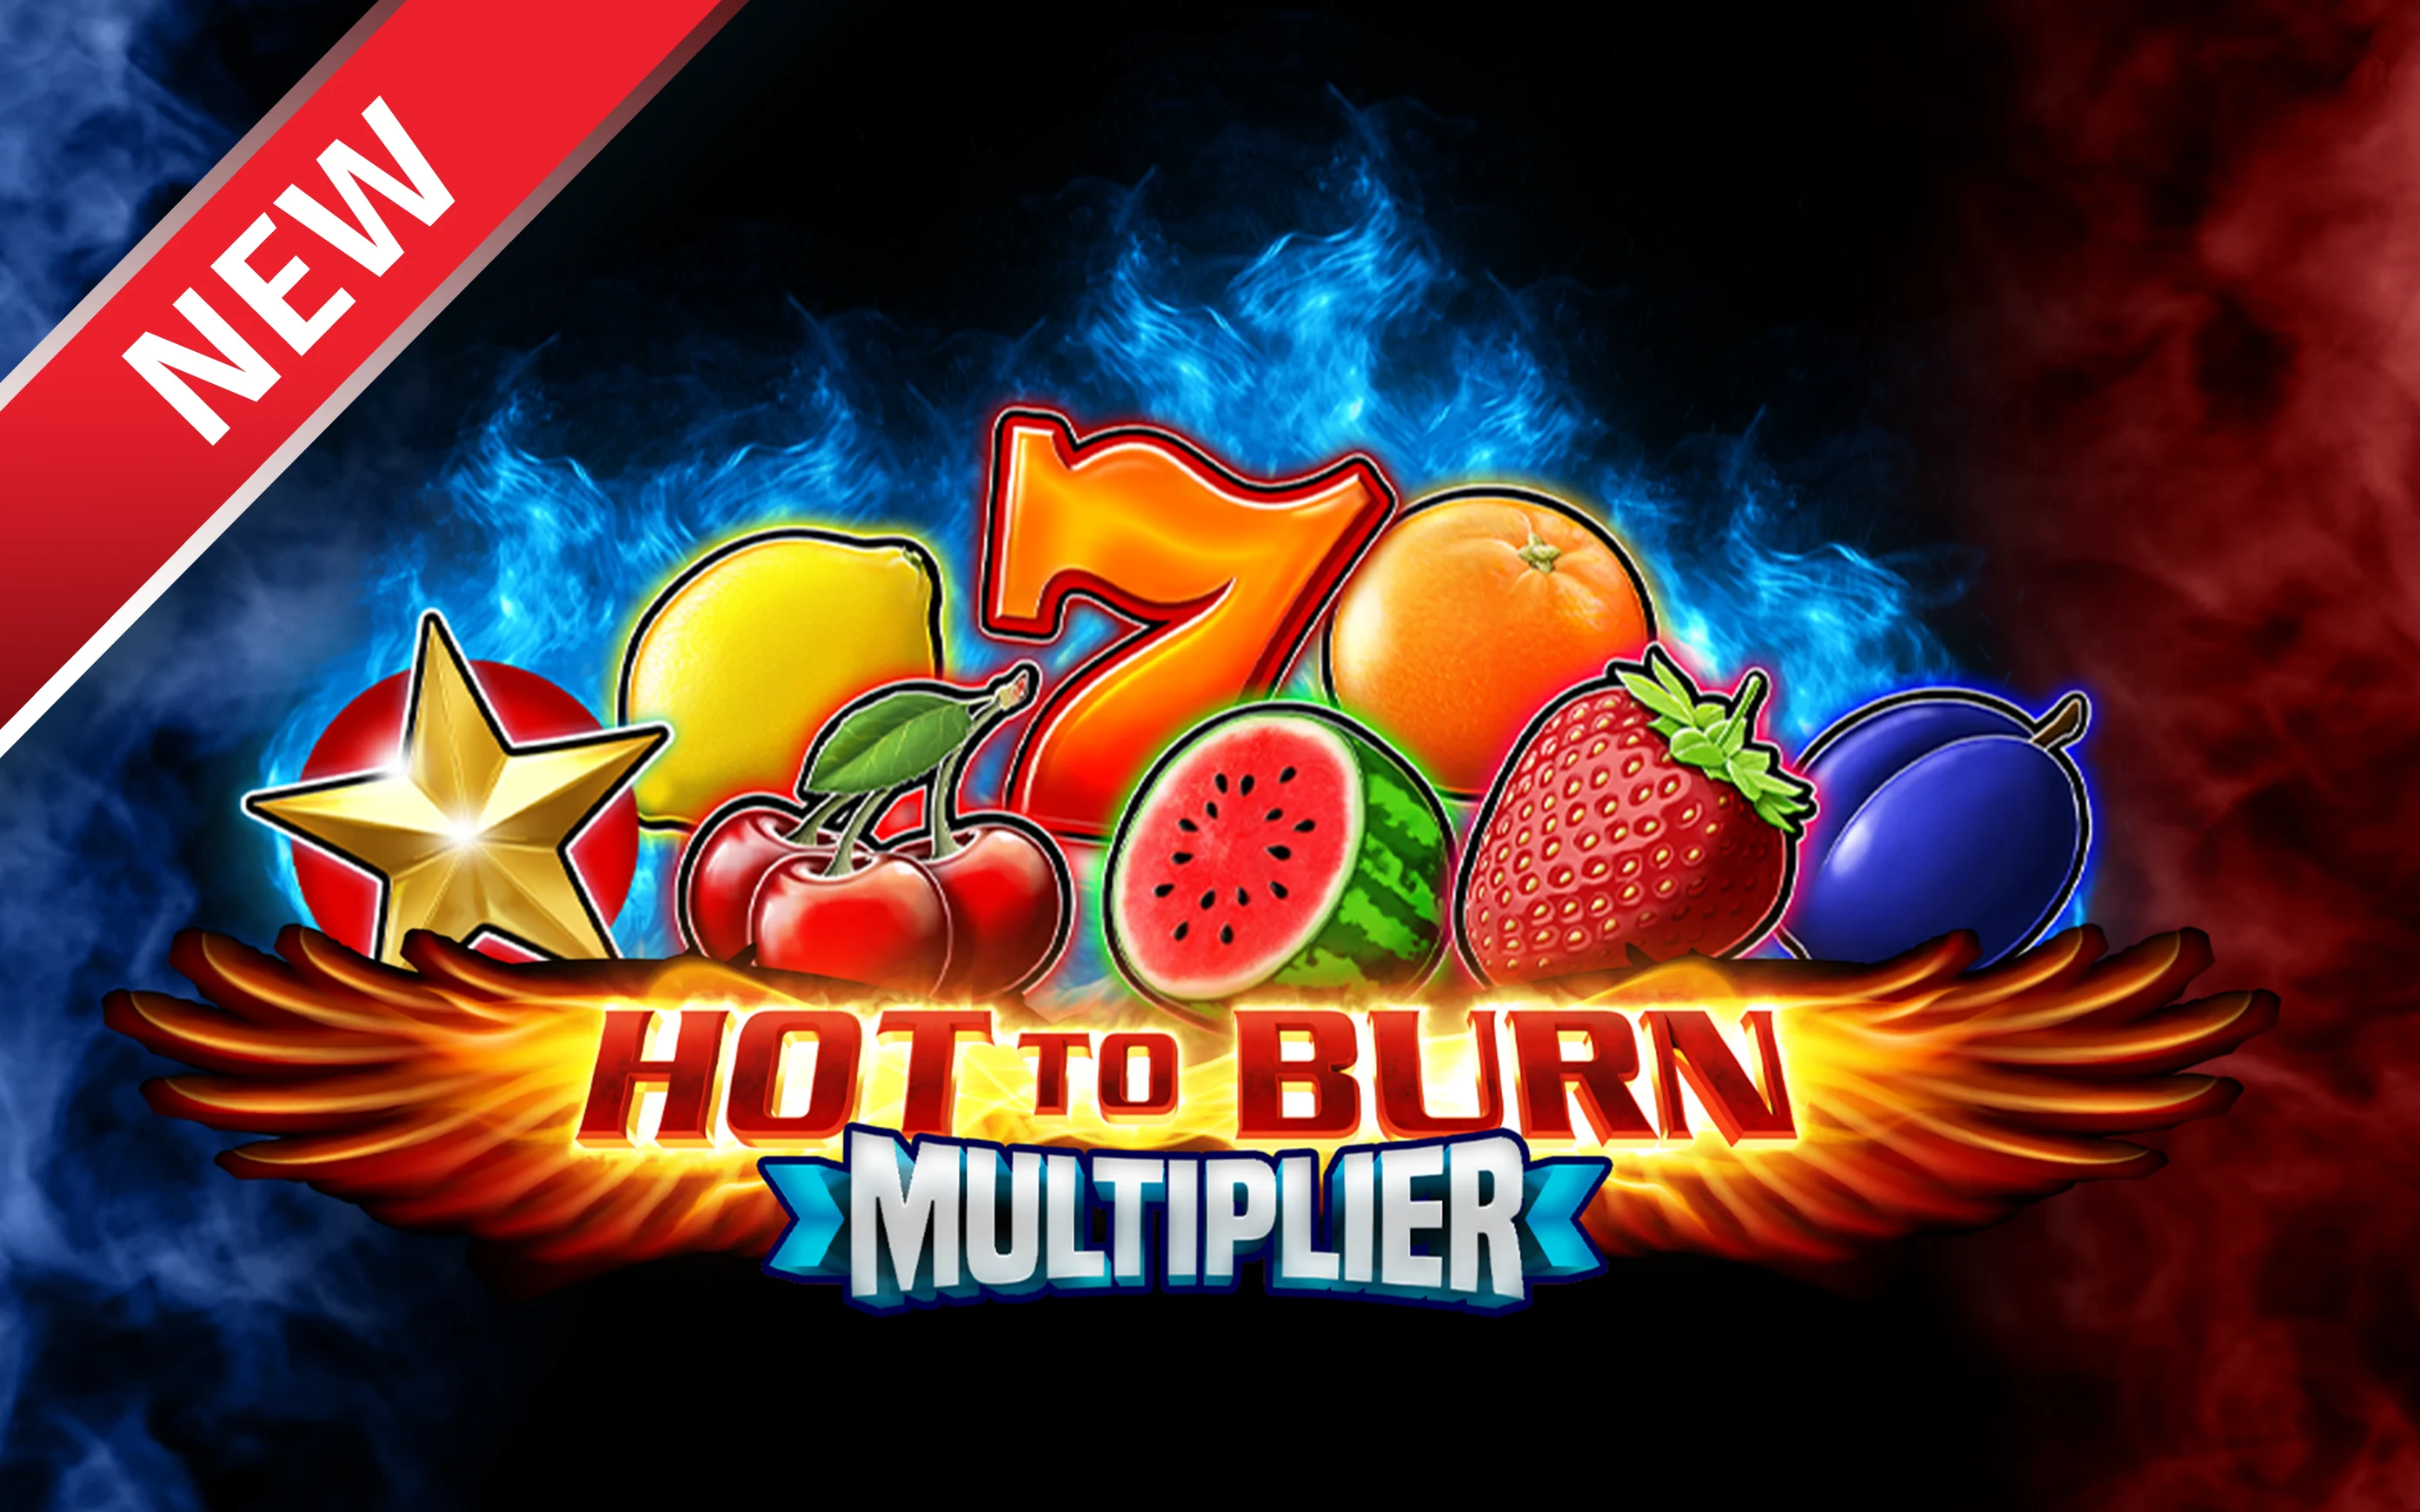 Juega a Hot to Burn Multiplier en el casino en línea de Starcasino.be